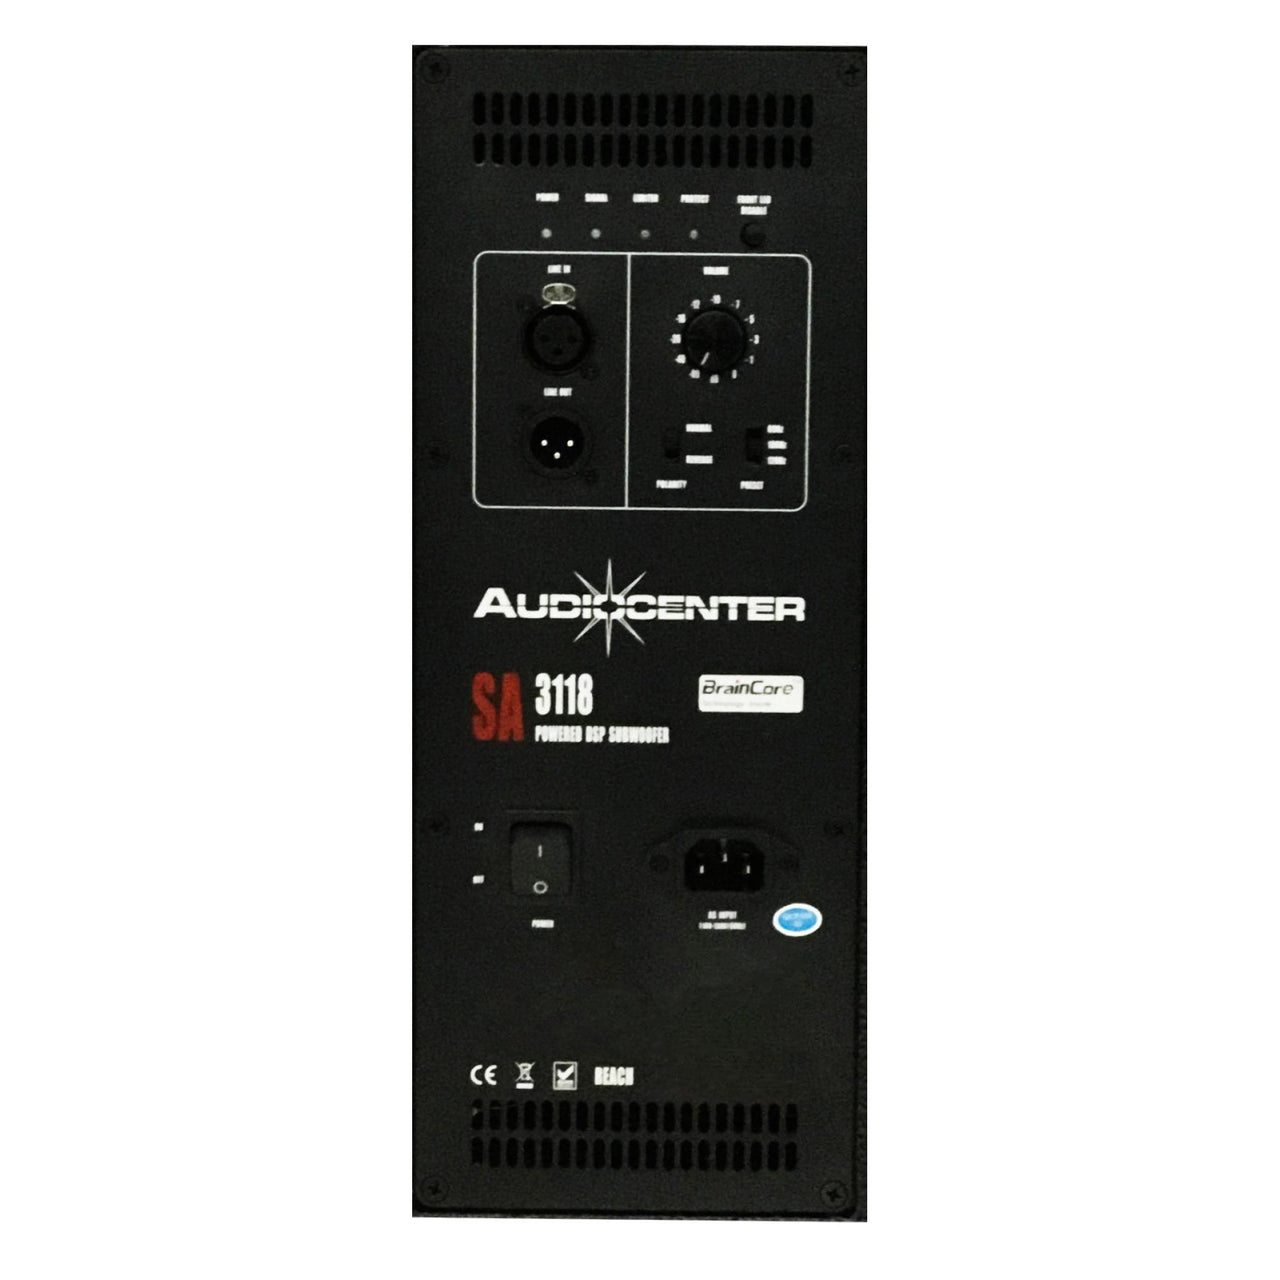 Subwoofer Audiocenter Sa3118 Bafle De 18 Pulgadas 1600W